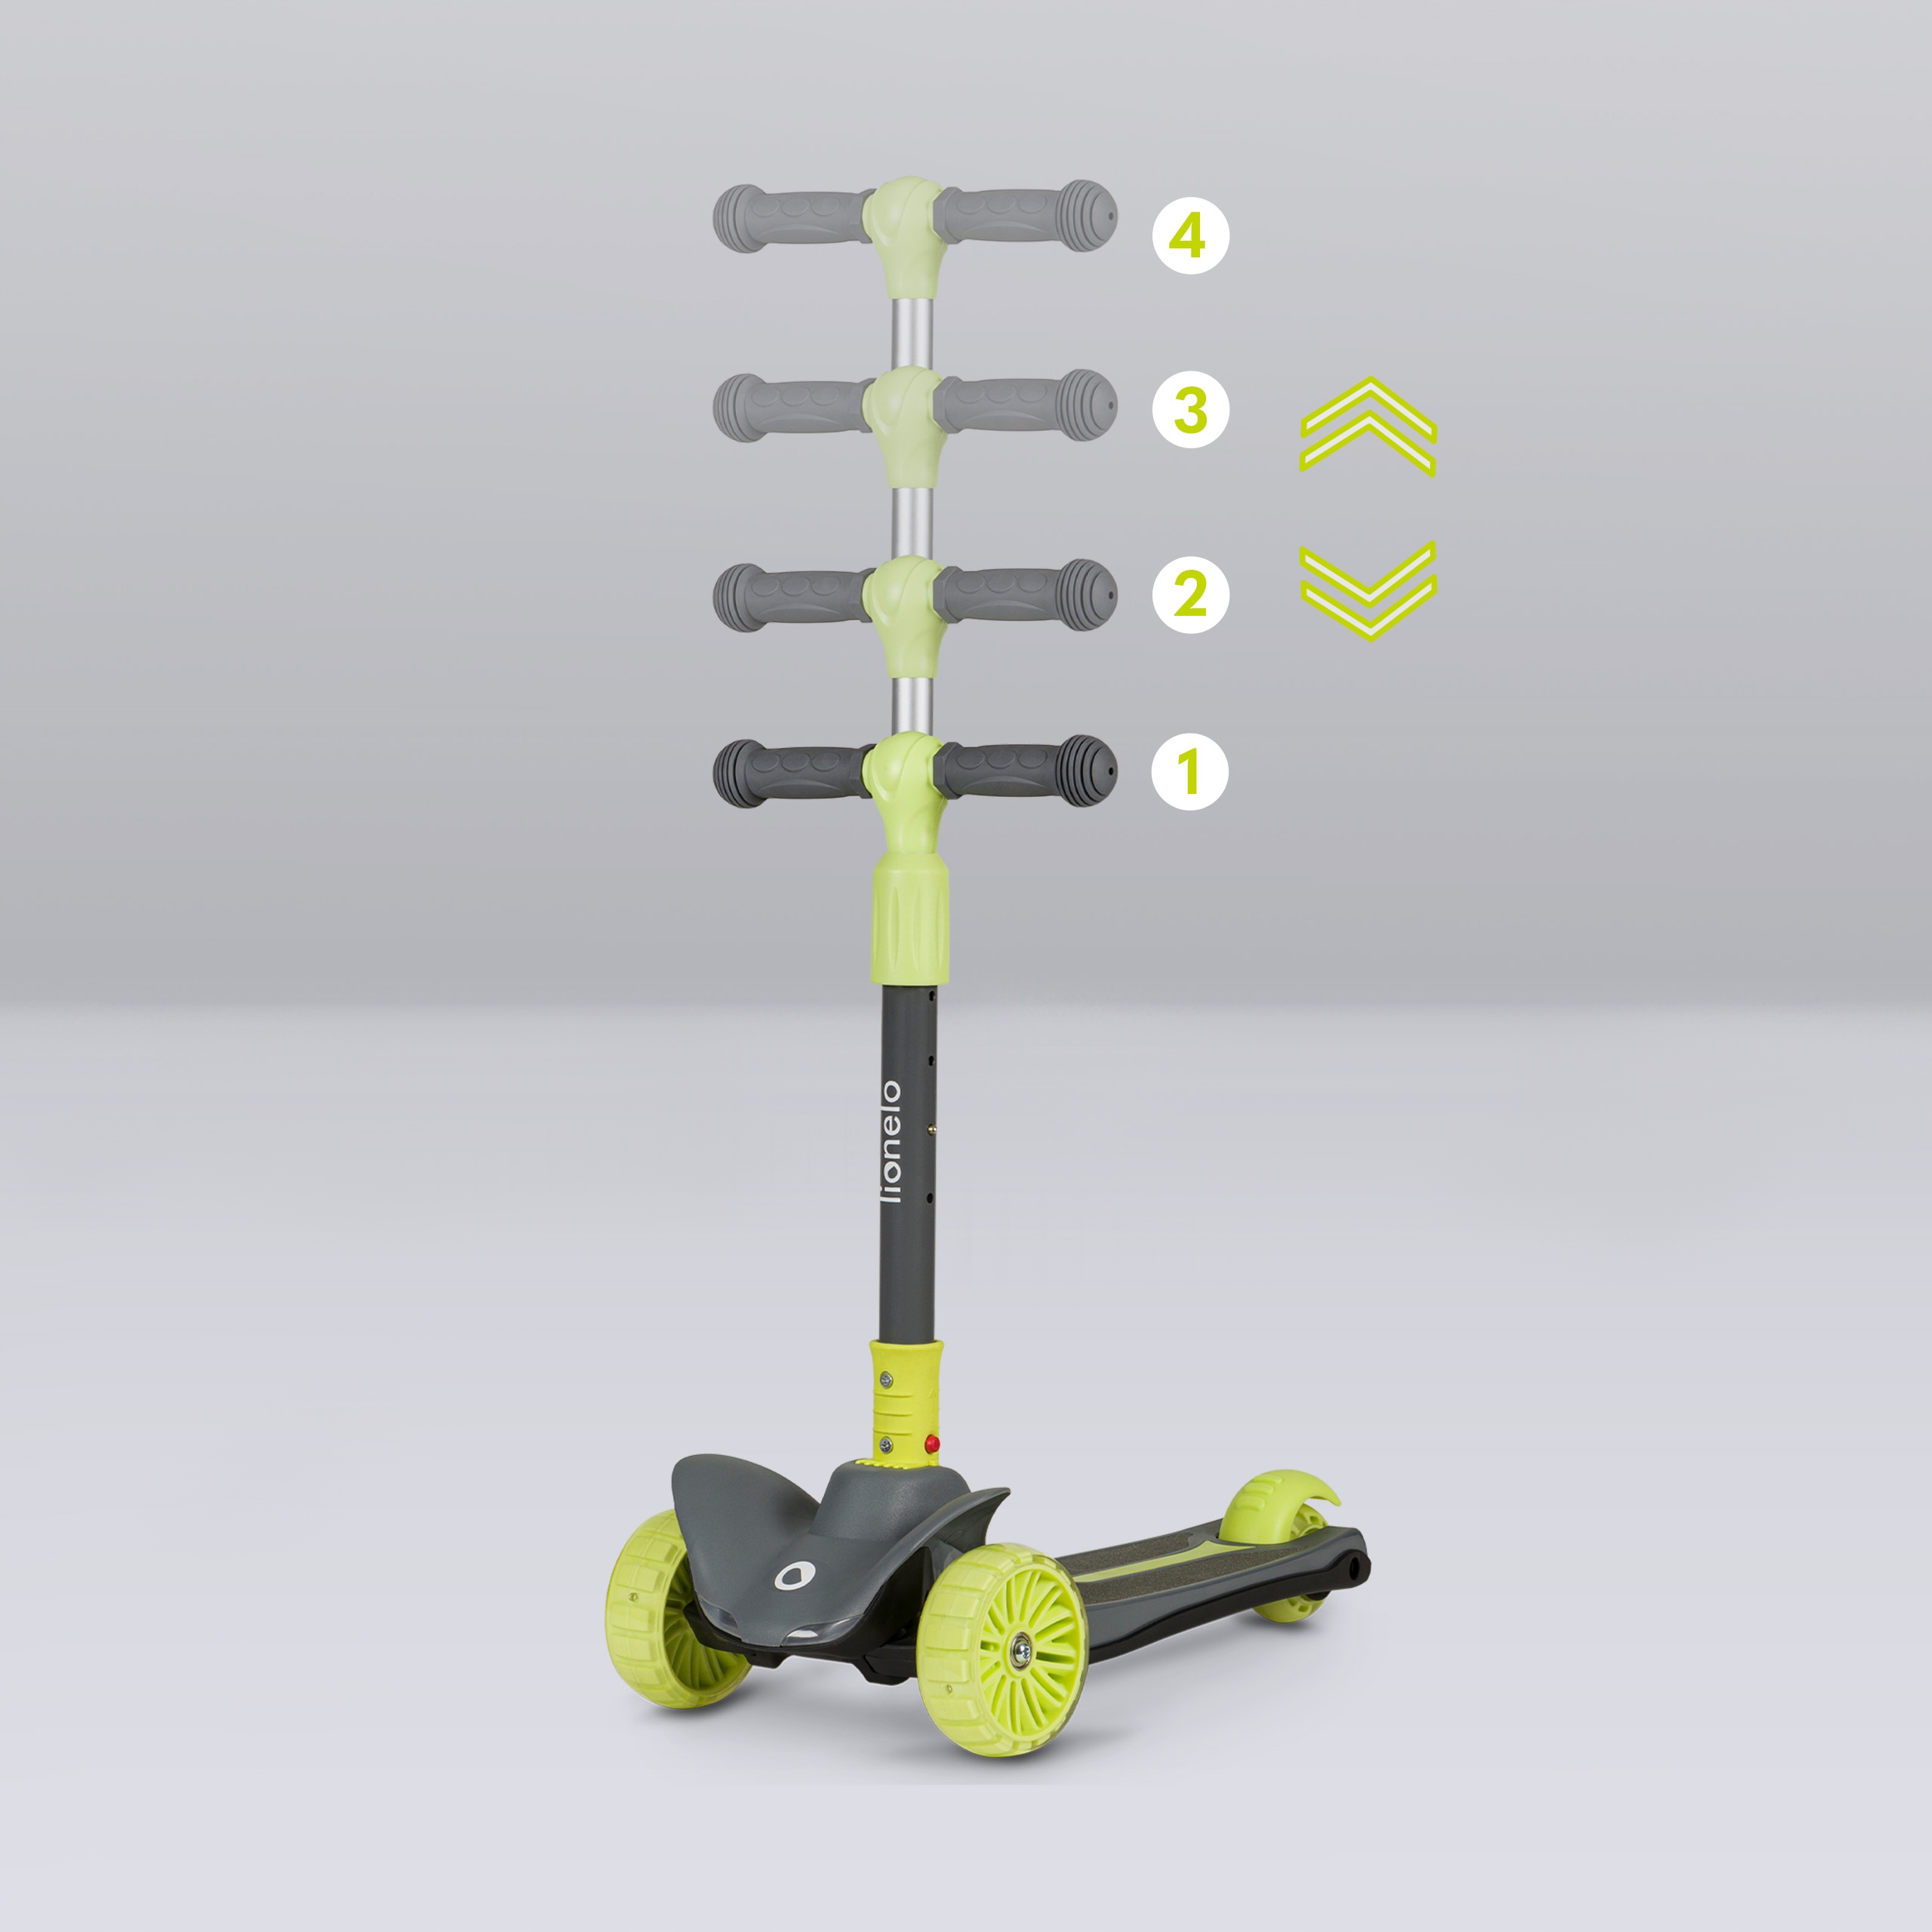 Trīsriteņu līdzsvara skrejritenis ar LED riteņiem, HOLY PLATFORM by Lionel Timmy Riteņu skaits 3